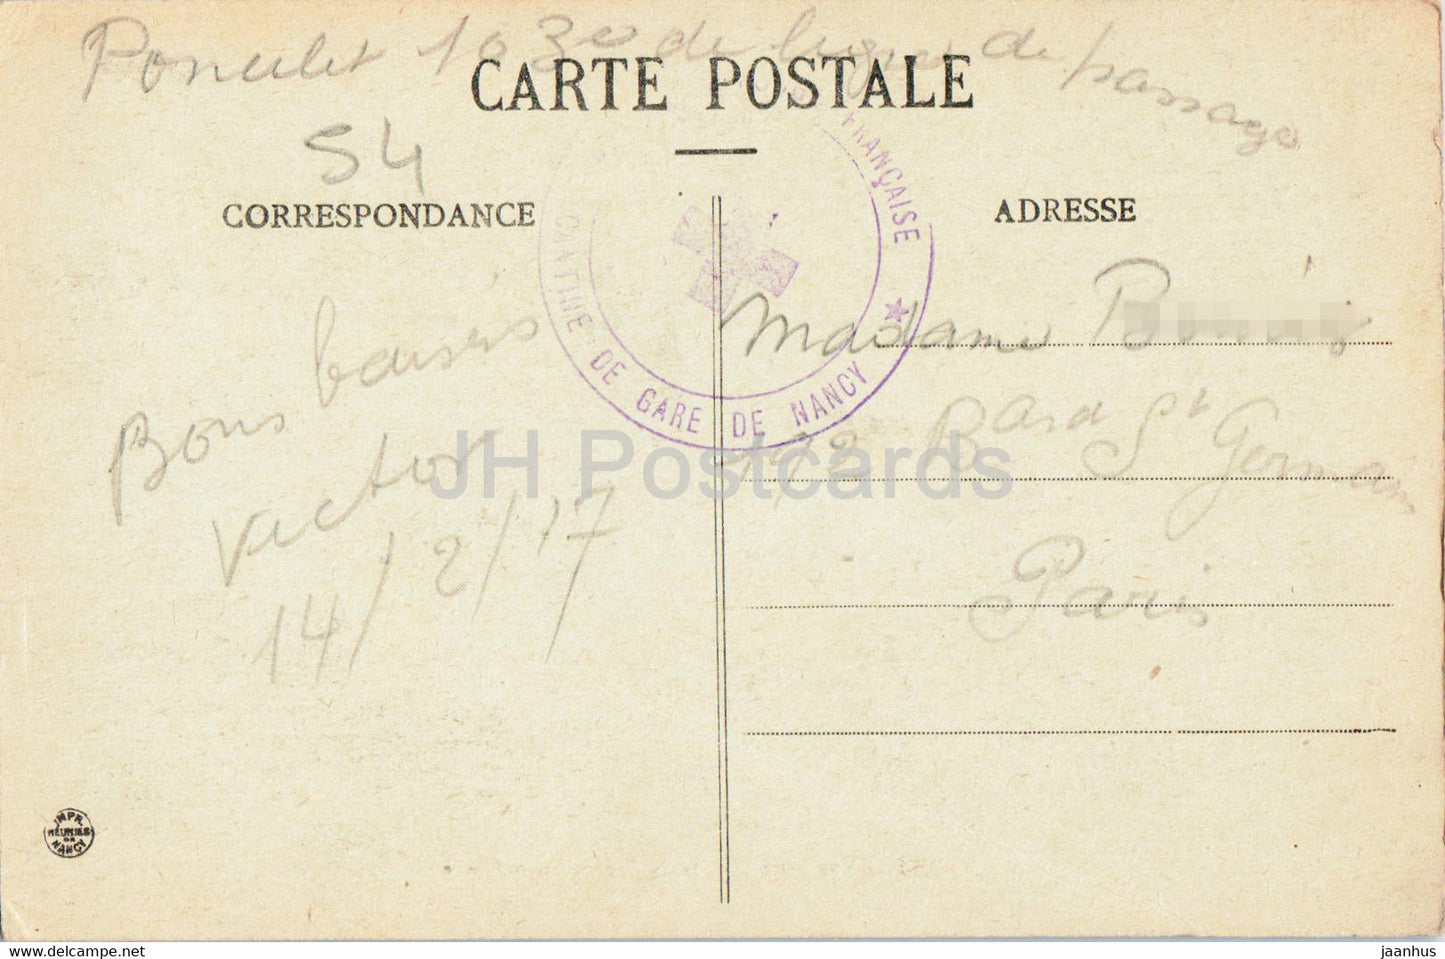 Nancy - Prix Vue Générale depuis Saint Epvre - 25 - carte postale ancienne - 1917 - France - oblitéré